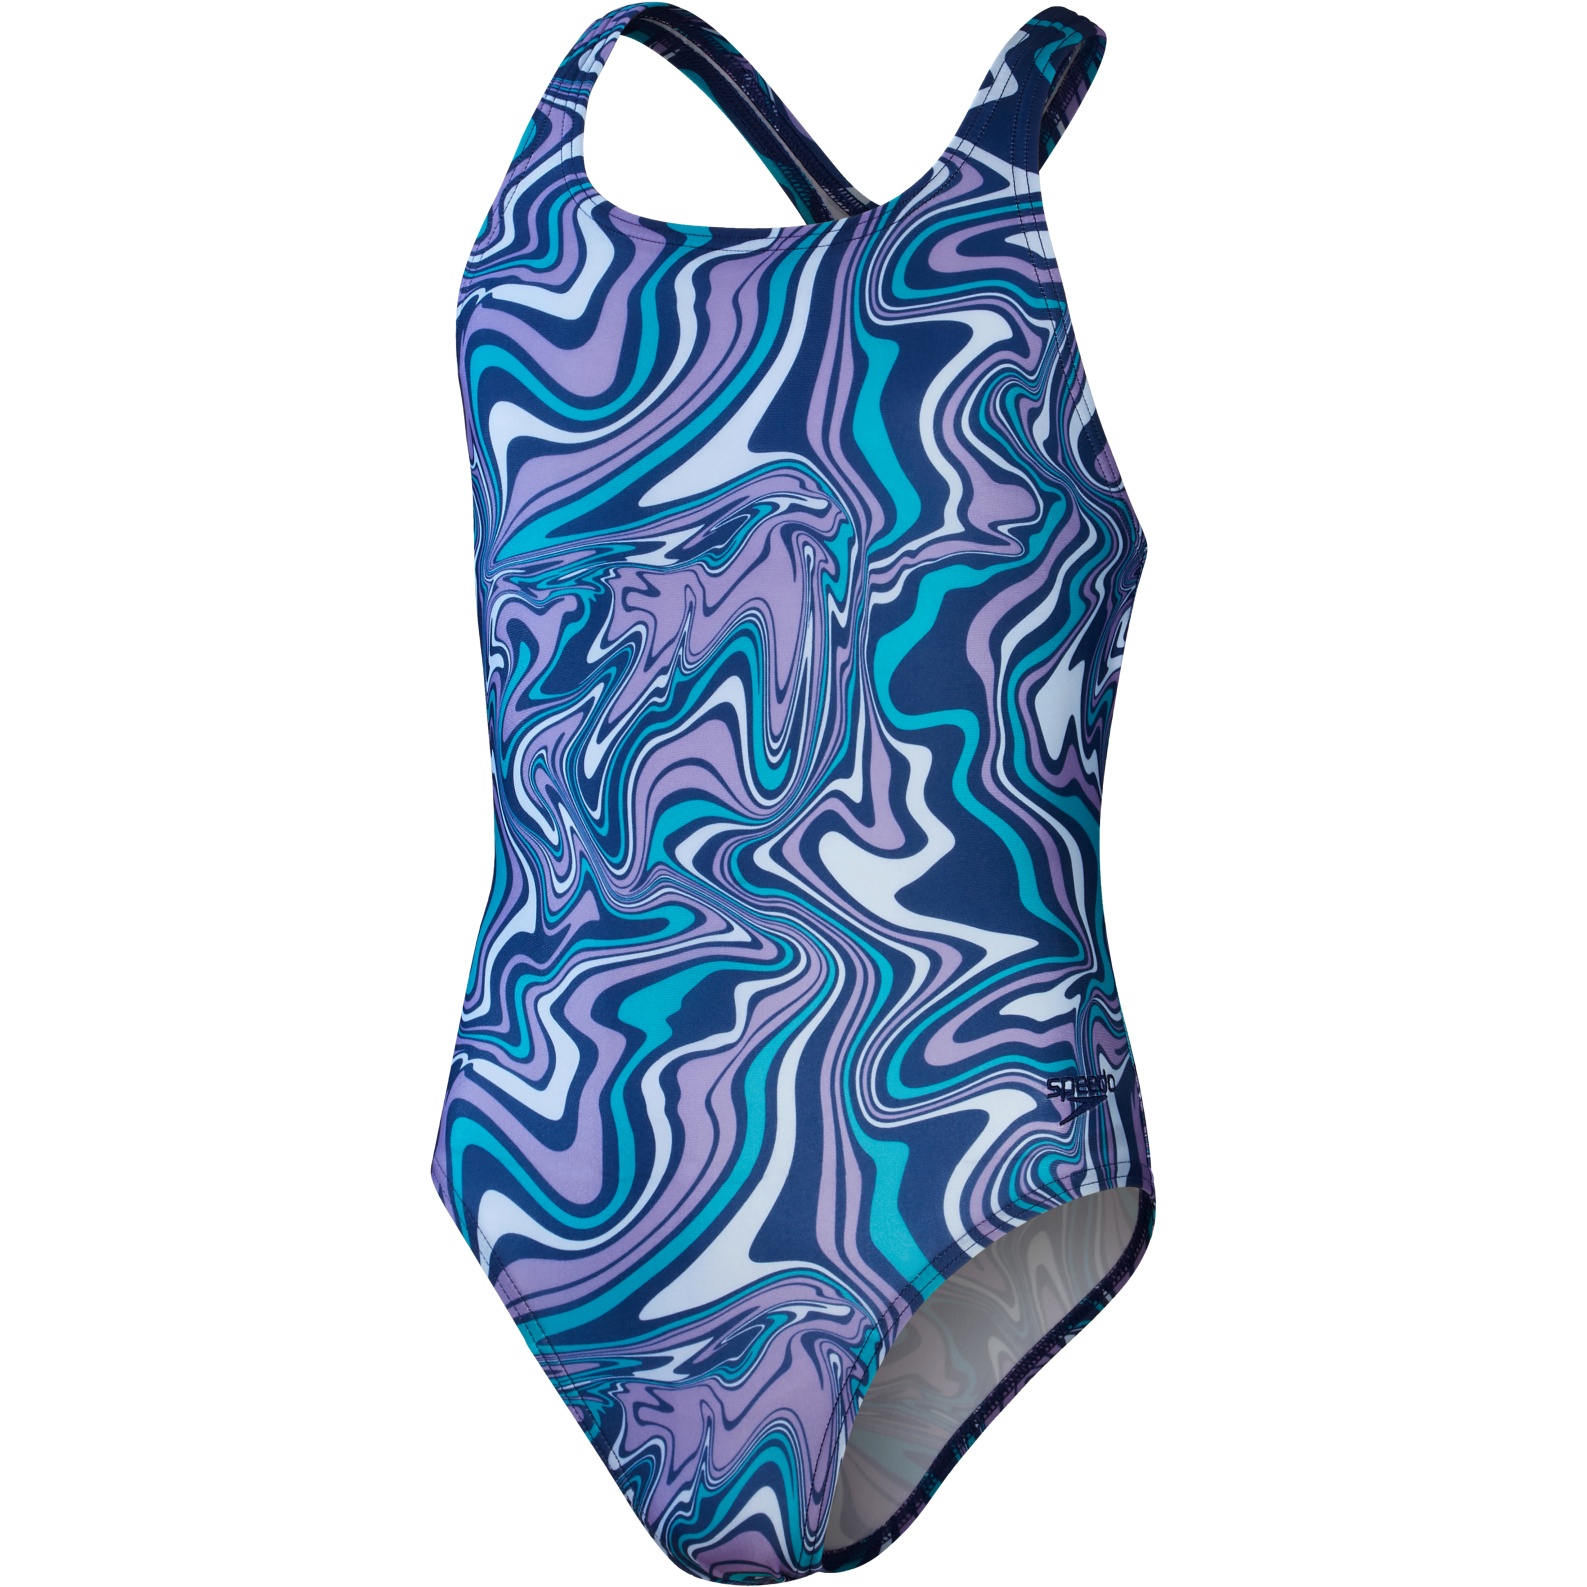 Produktbild von Speedo Allover Medalist Badeanzug Mädchen - ammonite blue/blue tack/miami lilac/aquarium